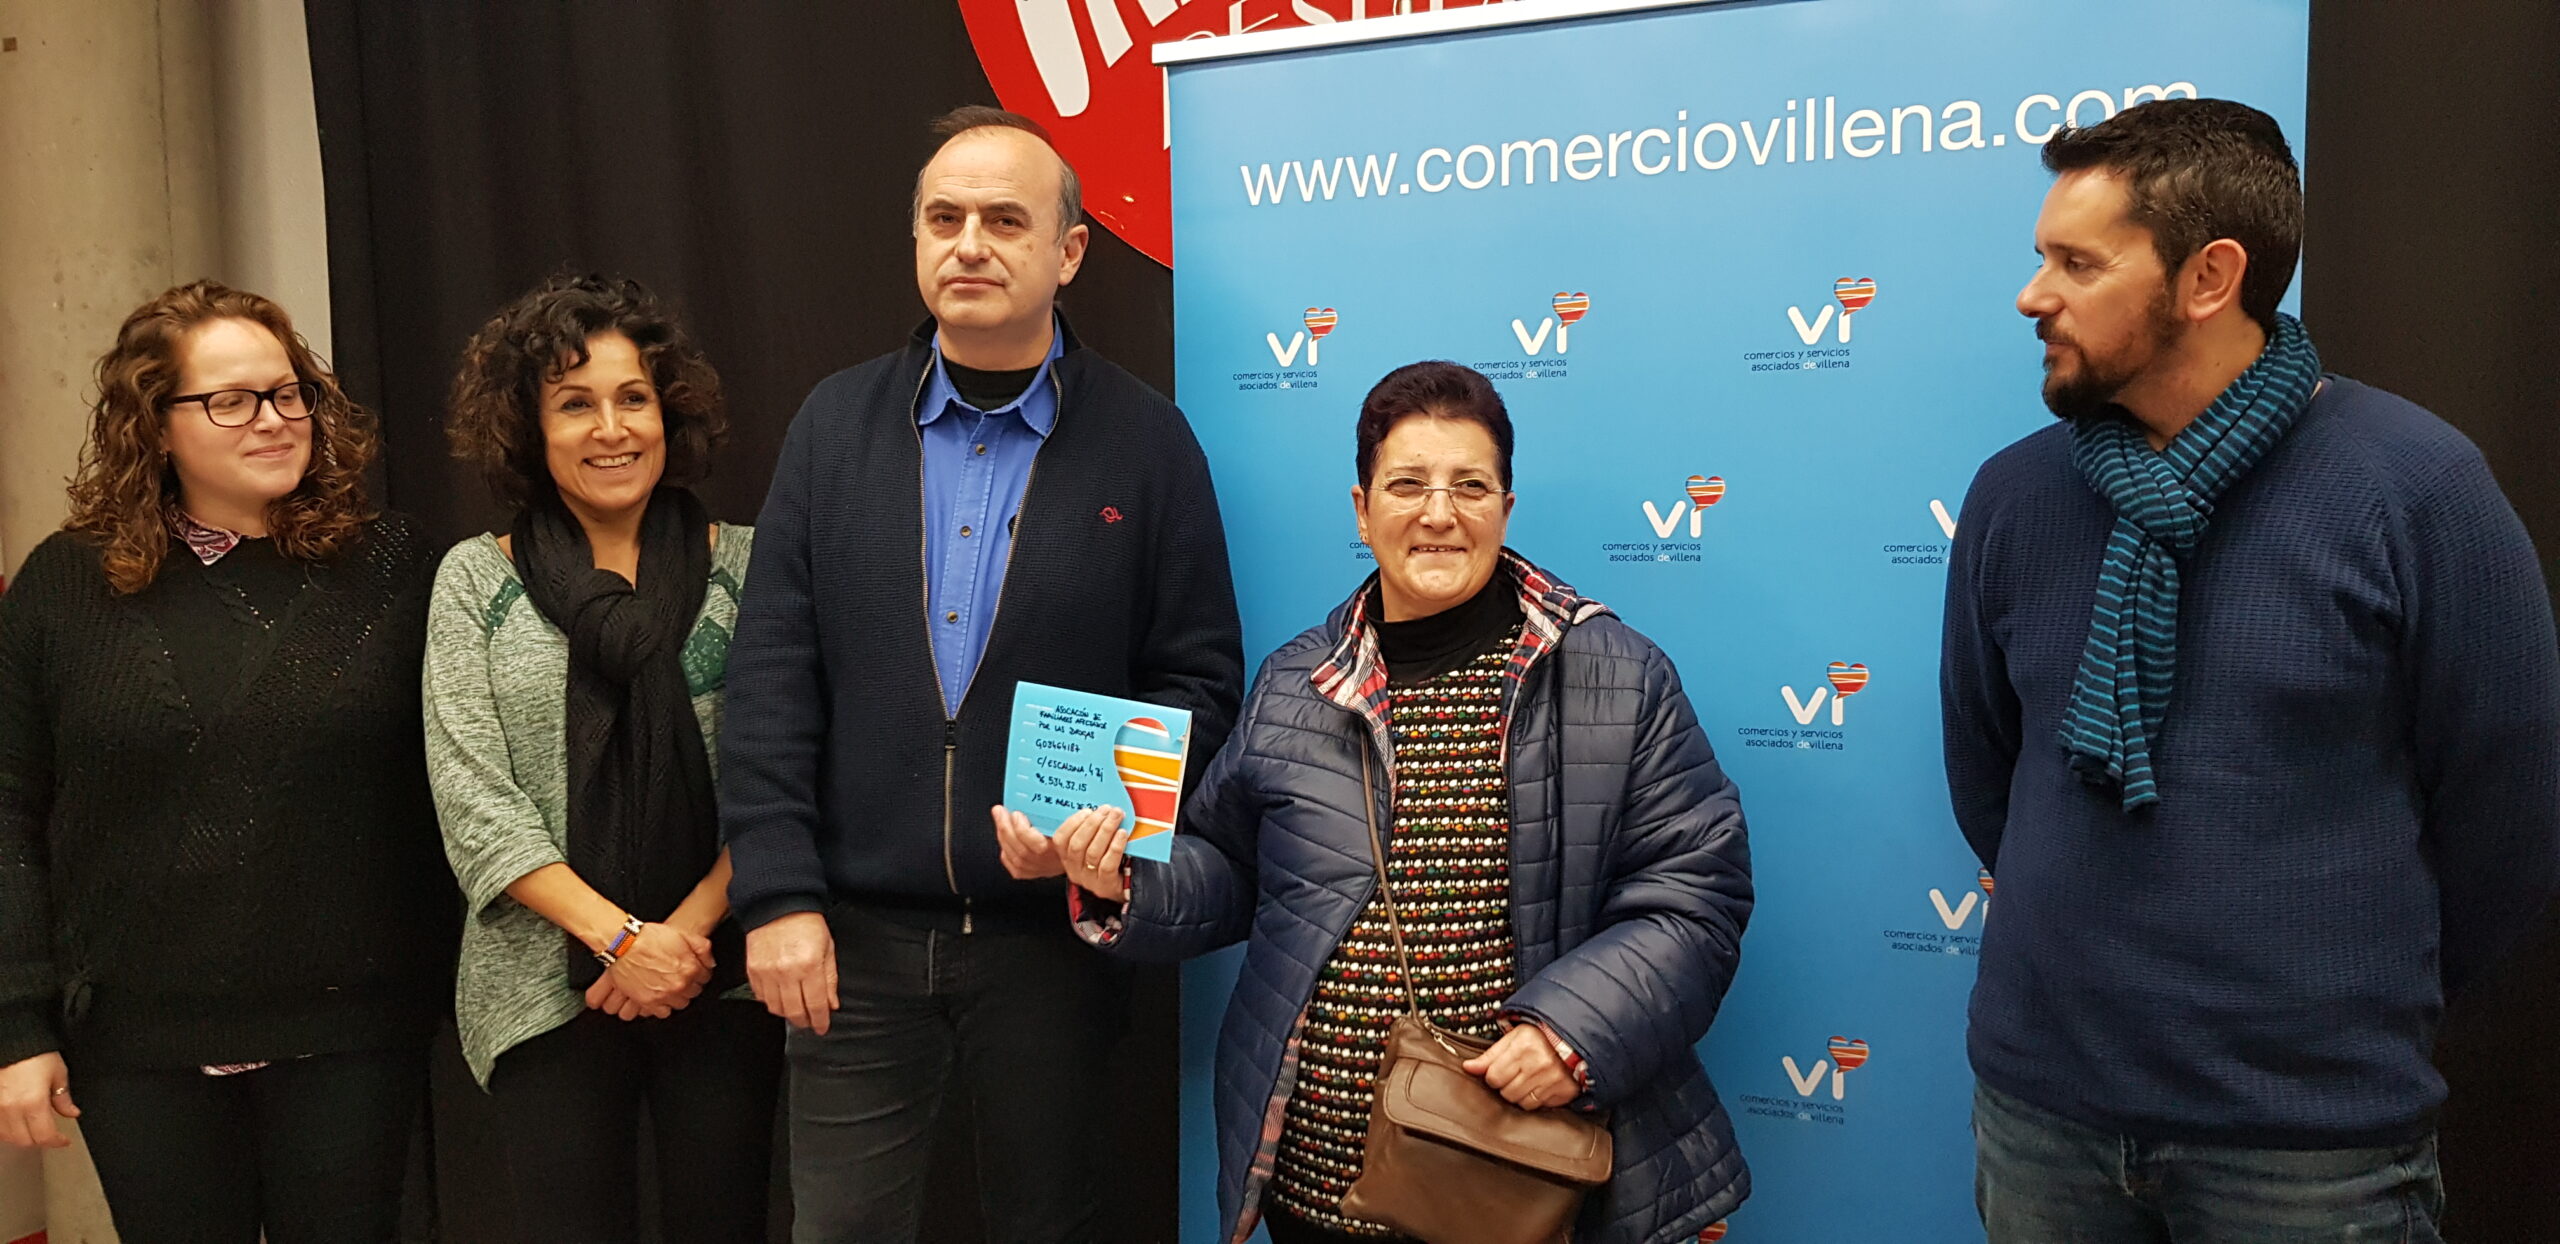 Juan García Camarasa gana 2.000 € del sorteo de Navidad de la Asociación de Comerciantes de Villena